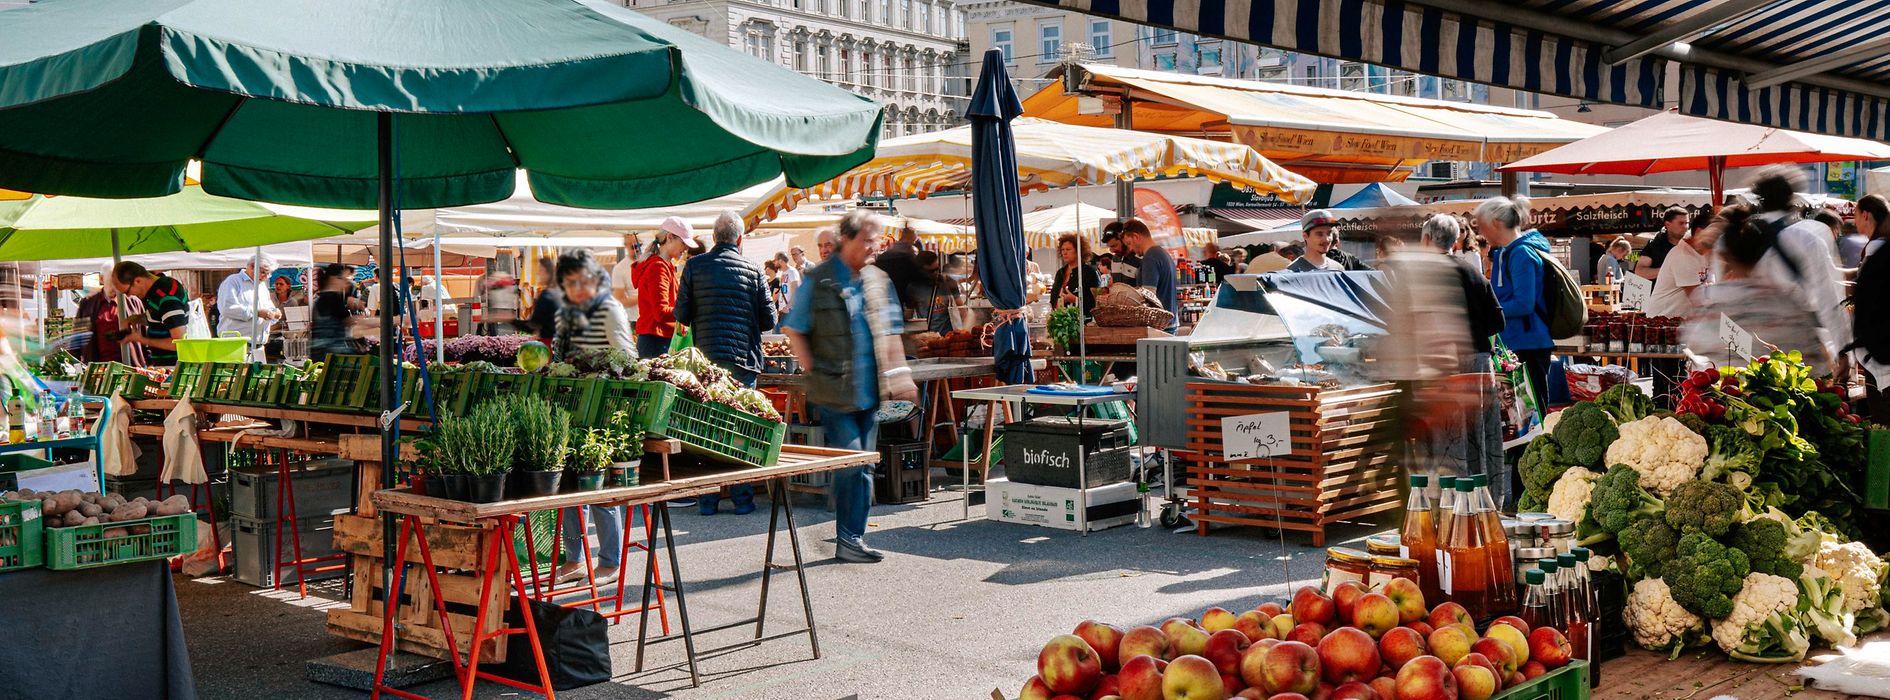 Lebensmittelstand auf einem Markt in Wien